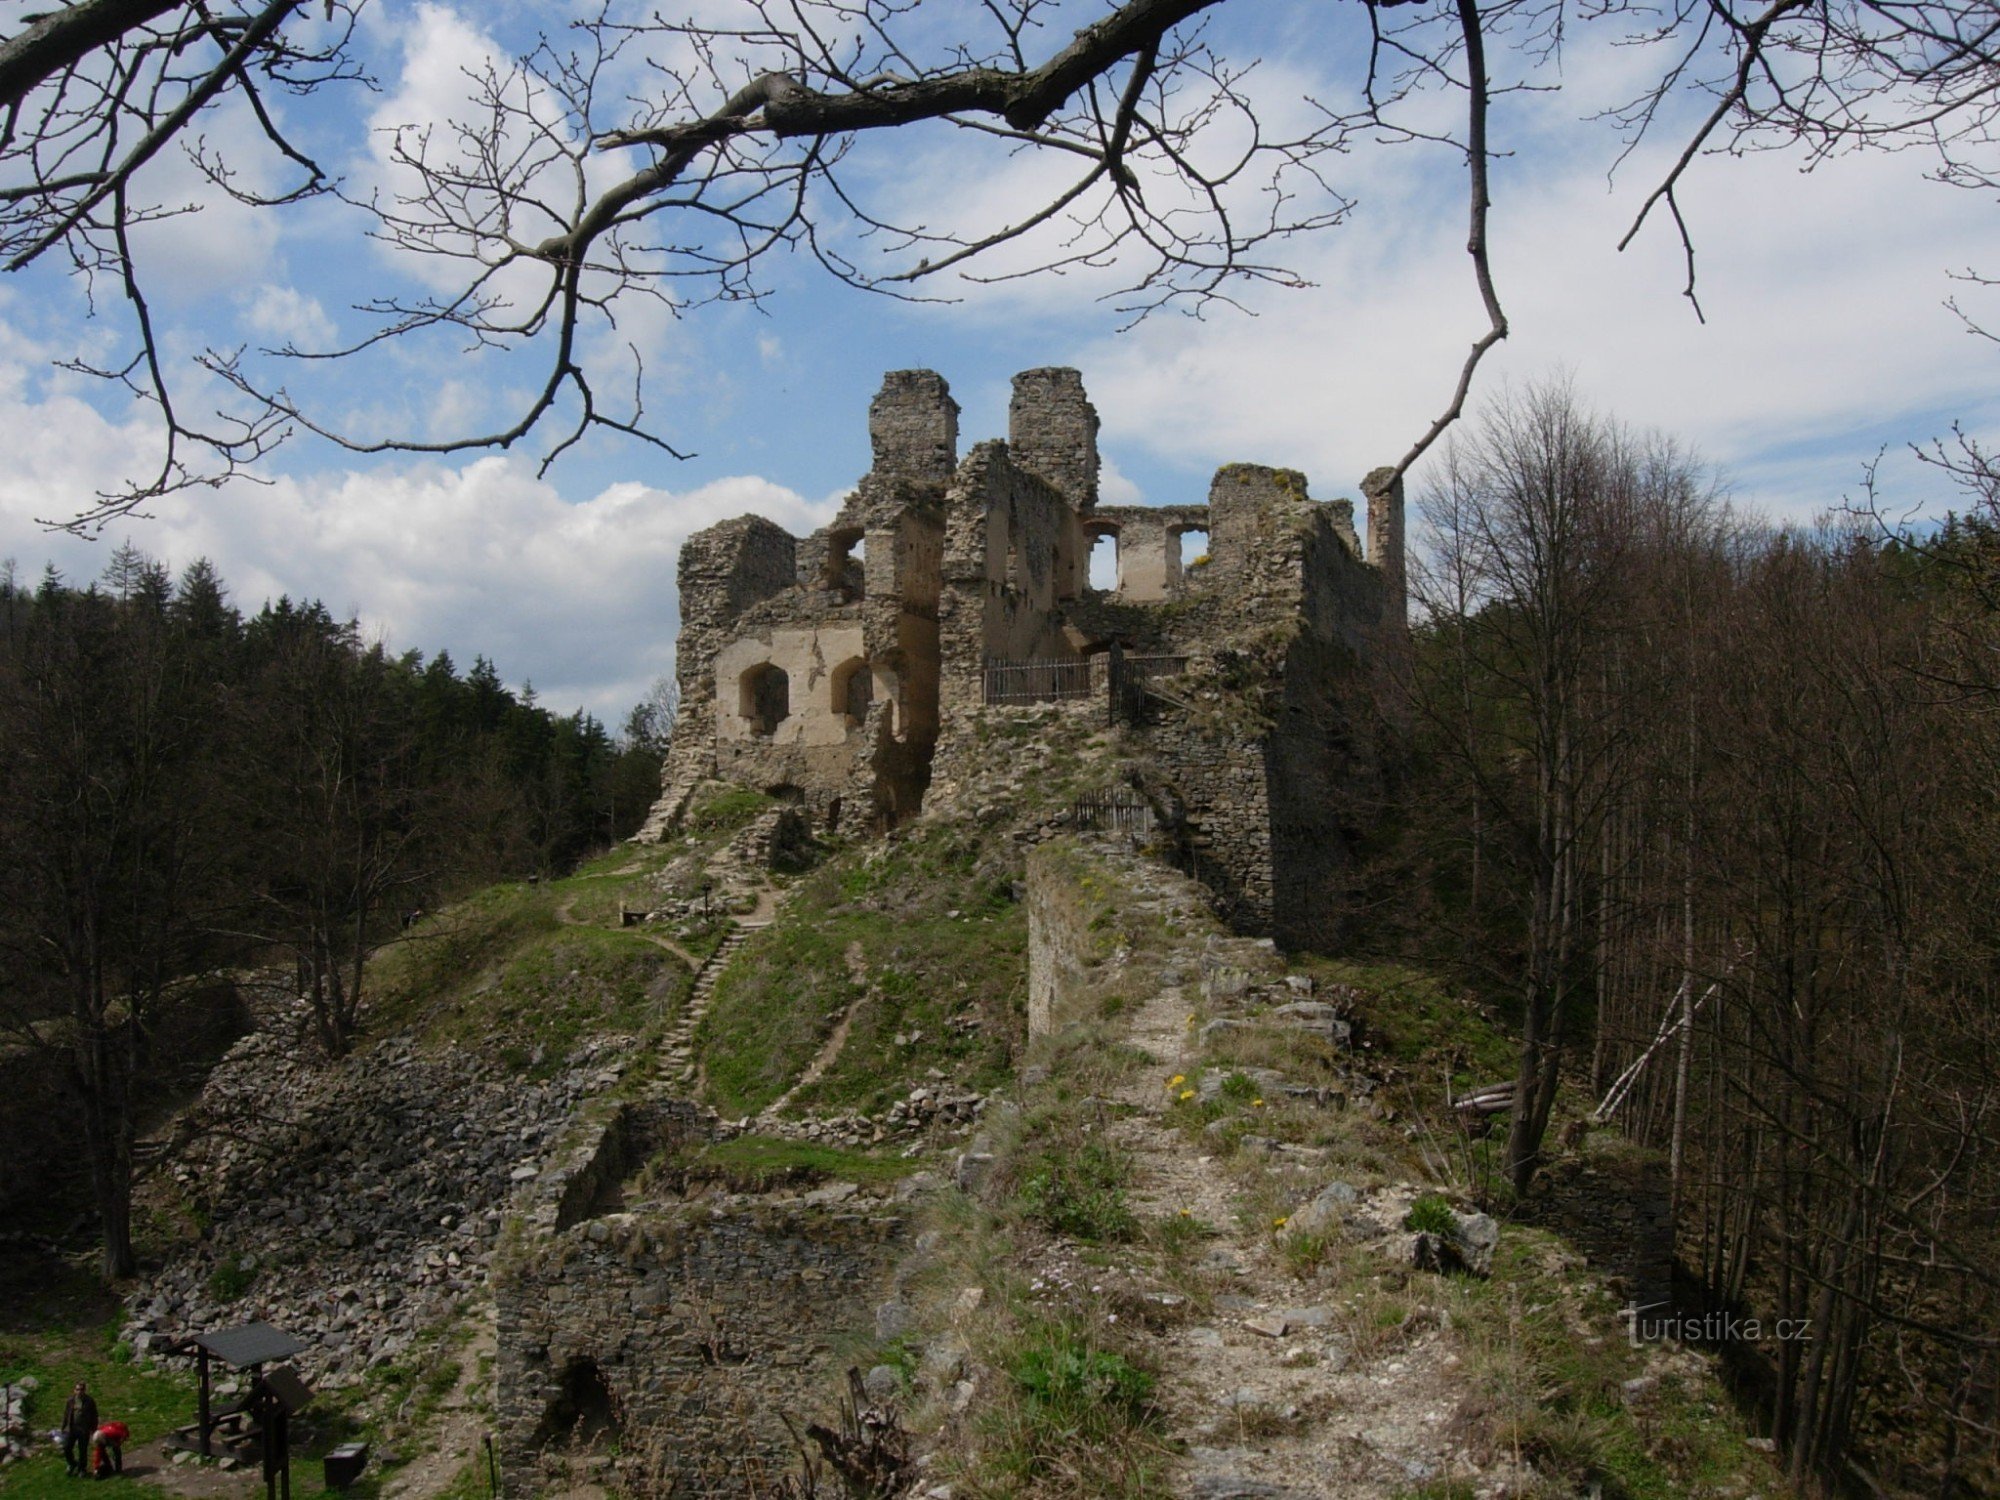 Maiden stone castle/Maidštejn/